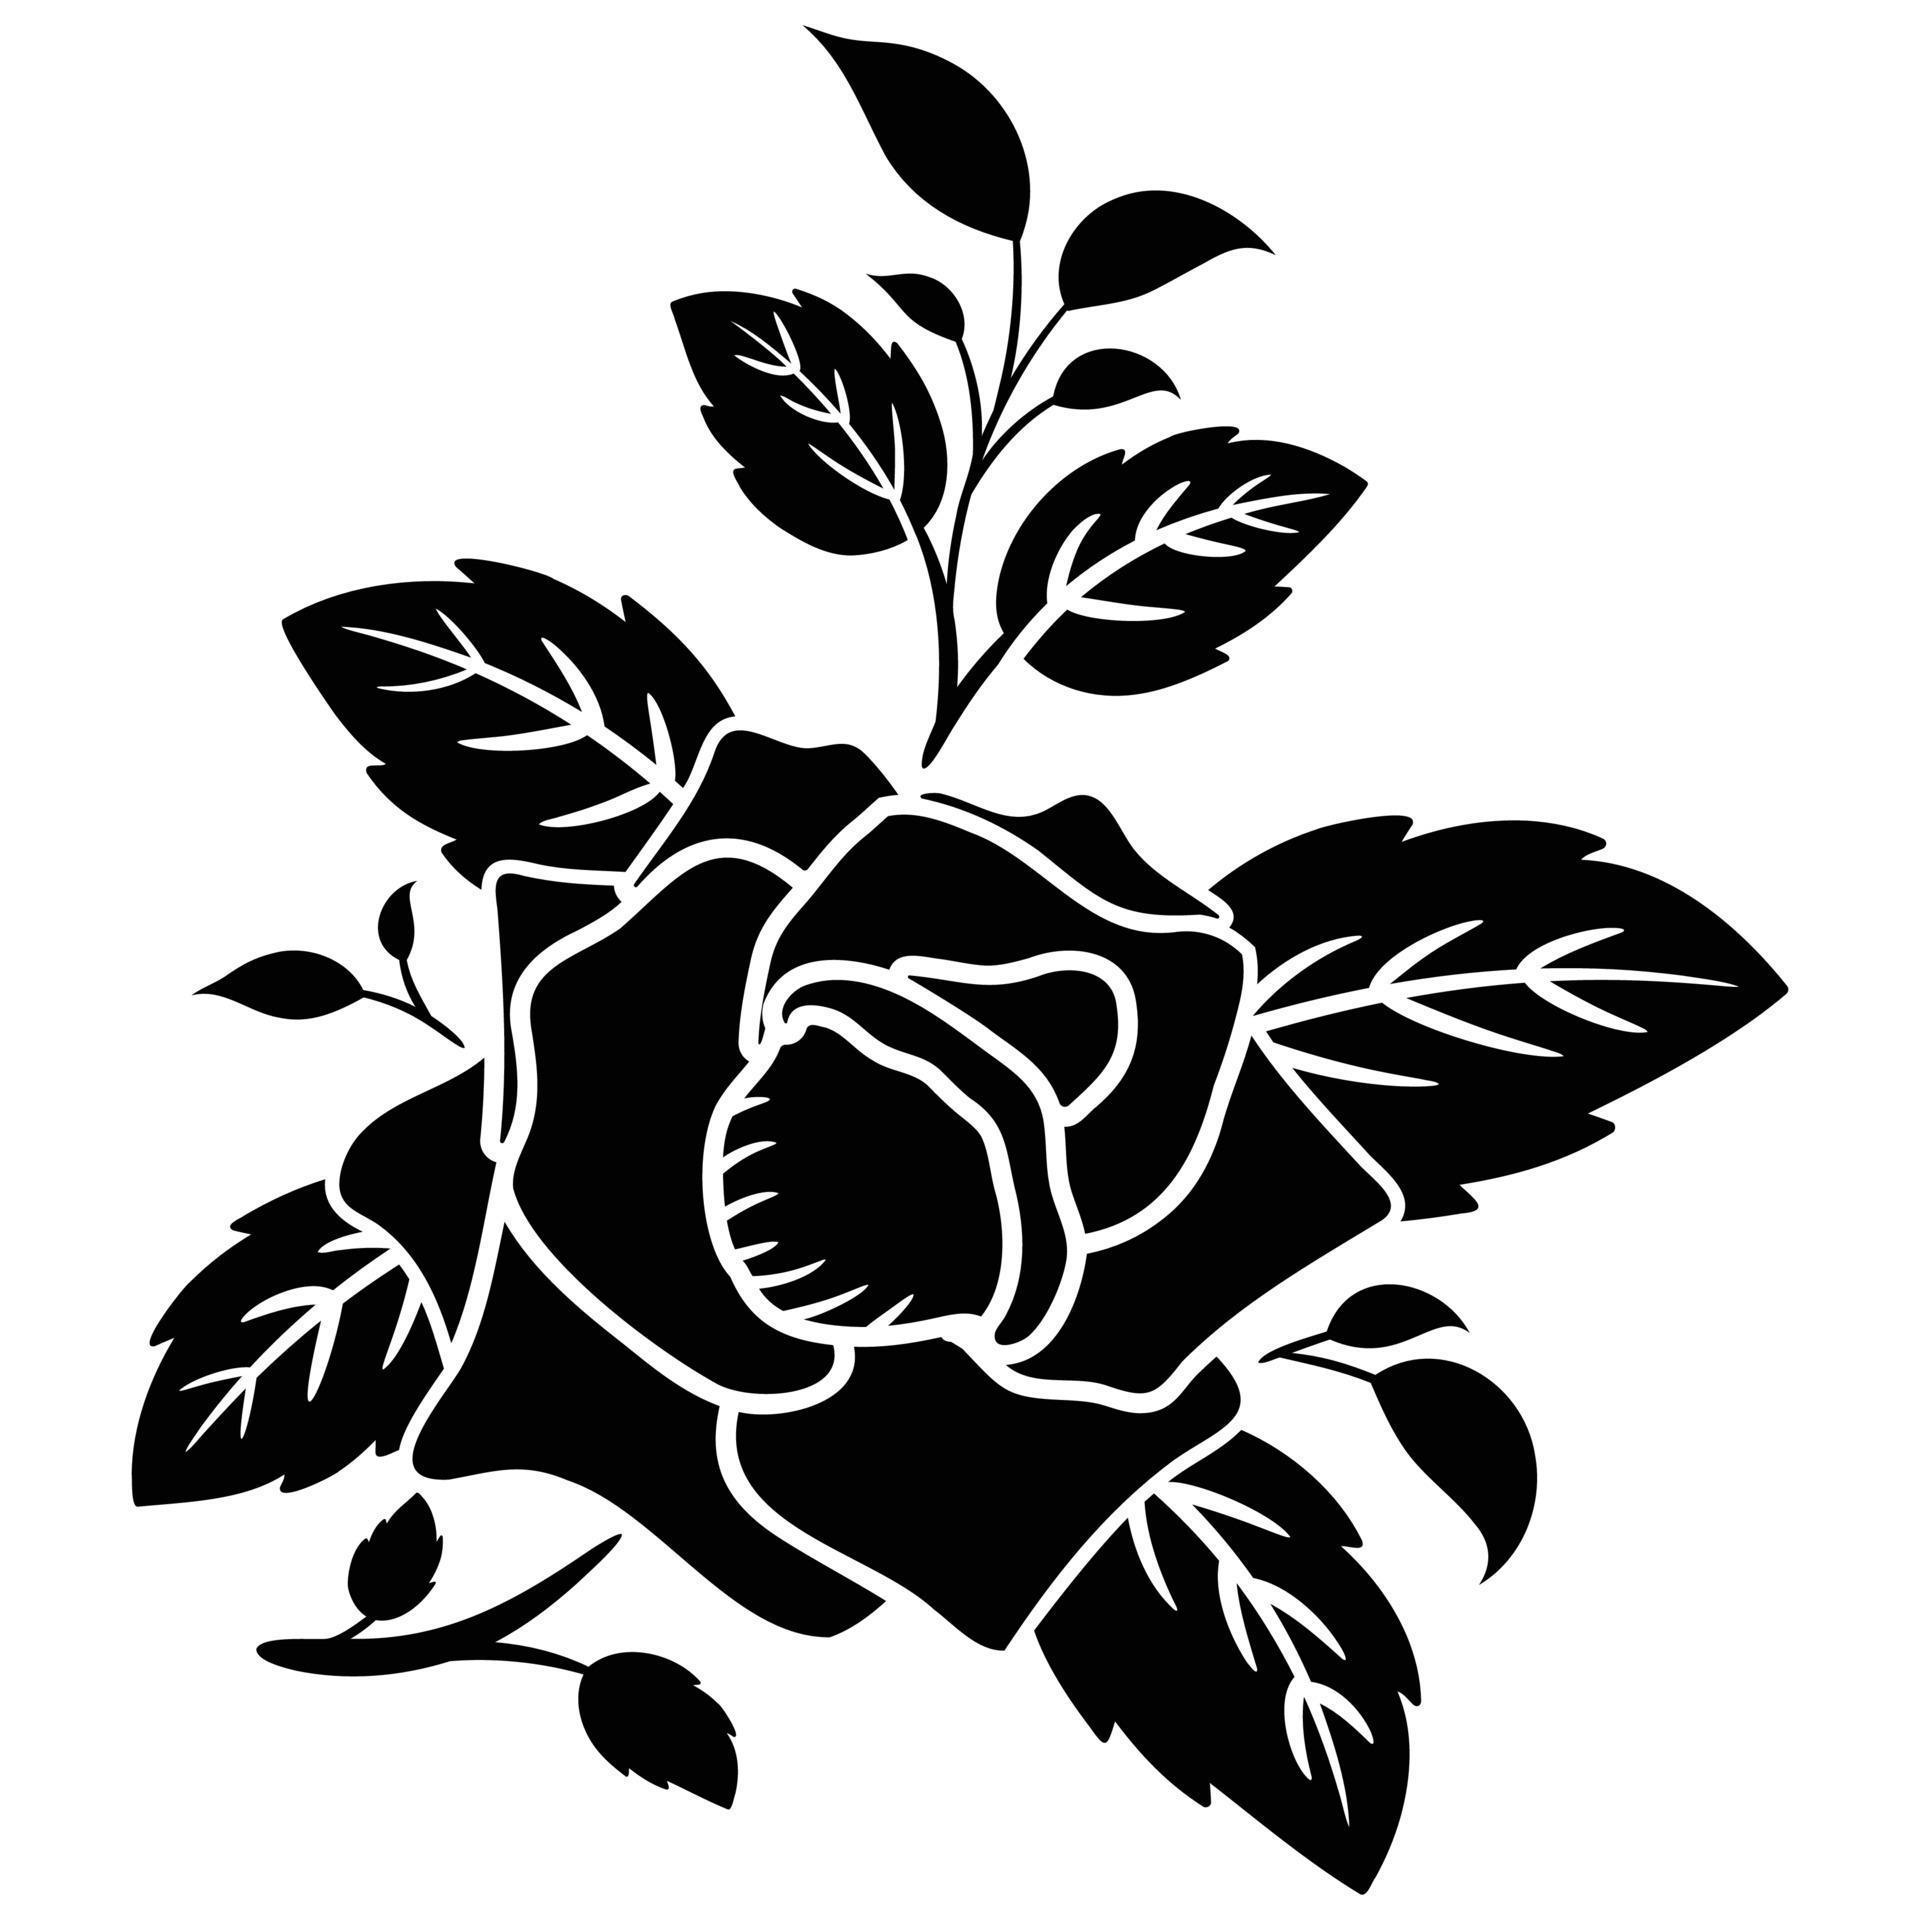 silhouette black rose motif flower 8107728 Vector Art at Vecteezy